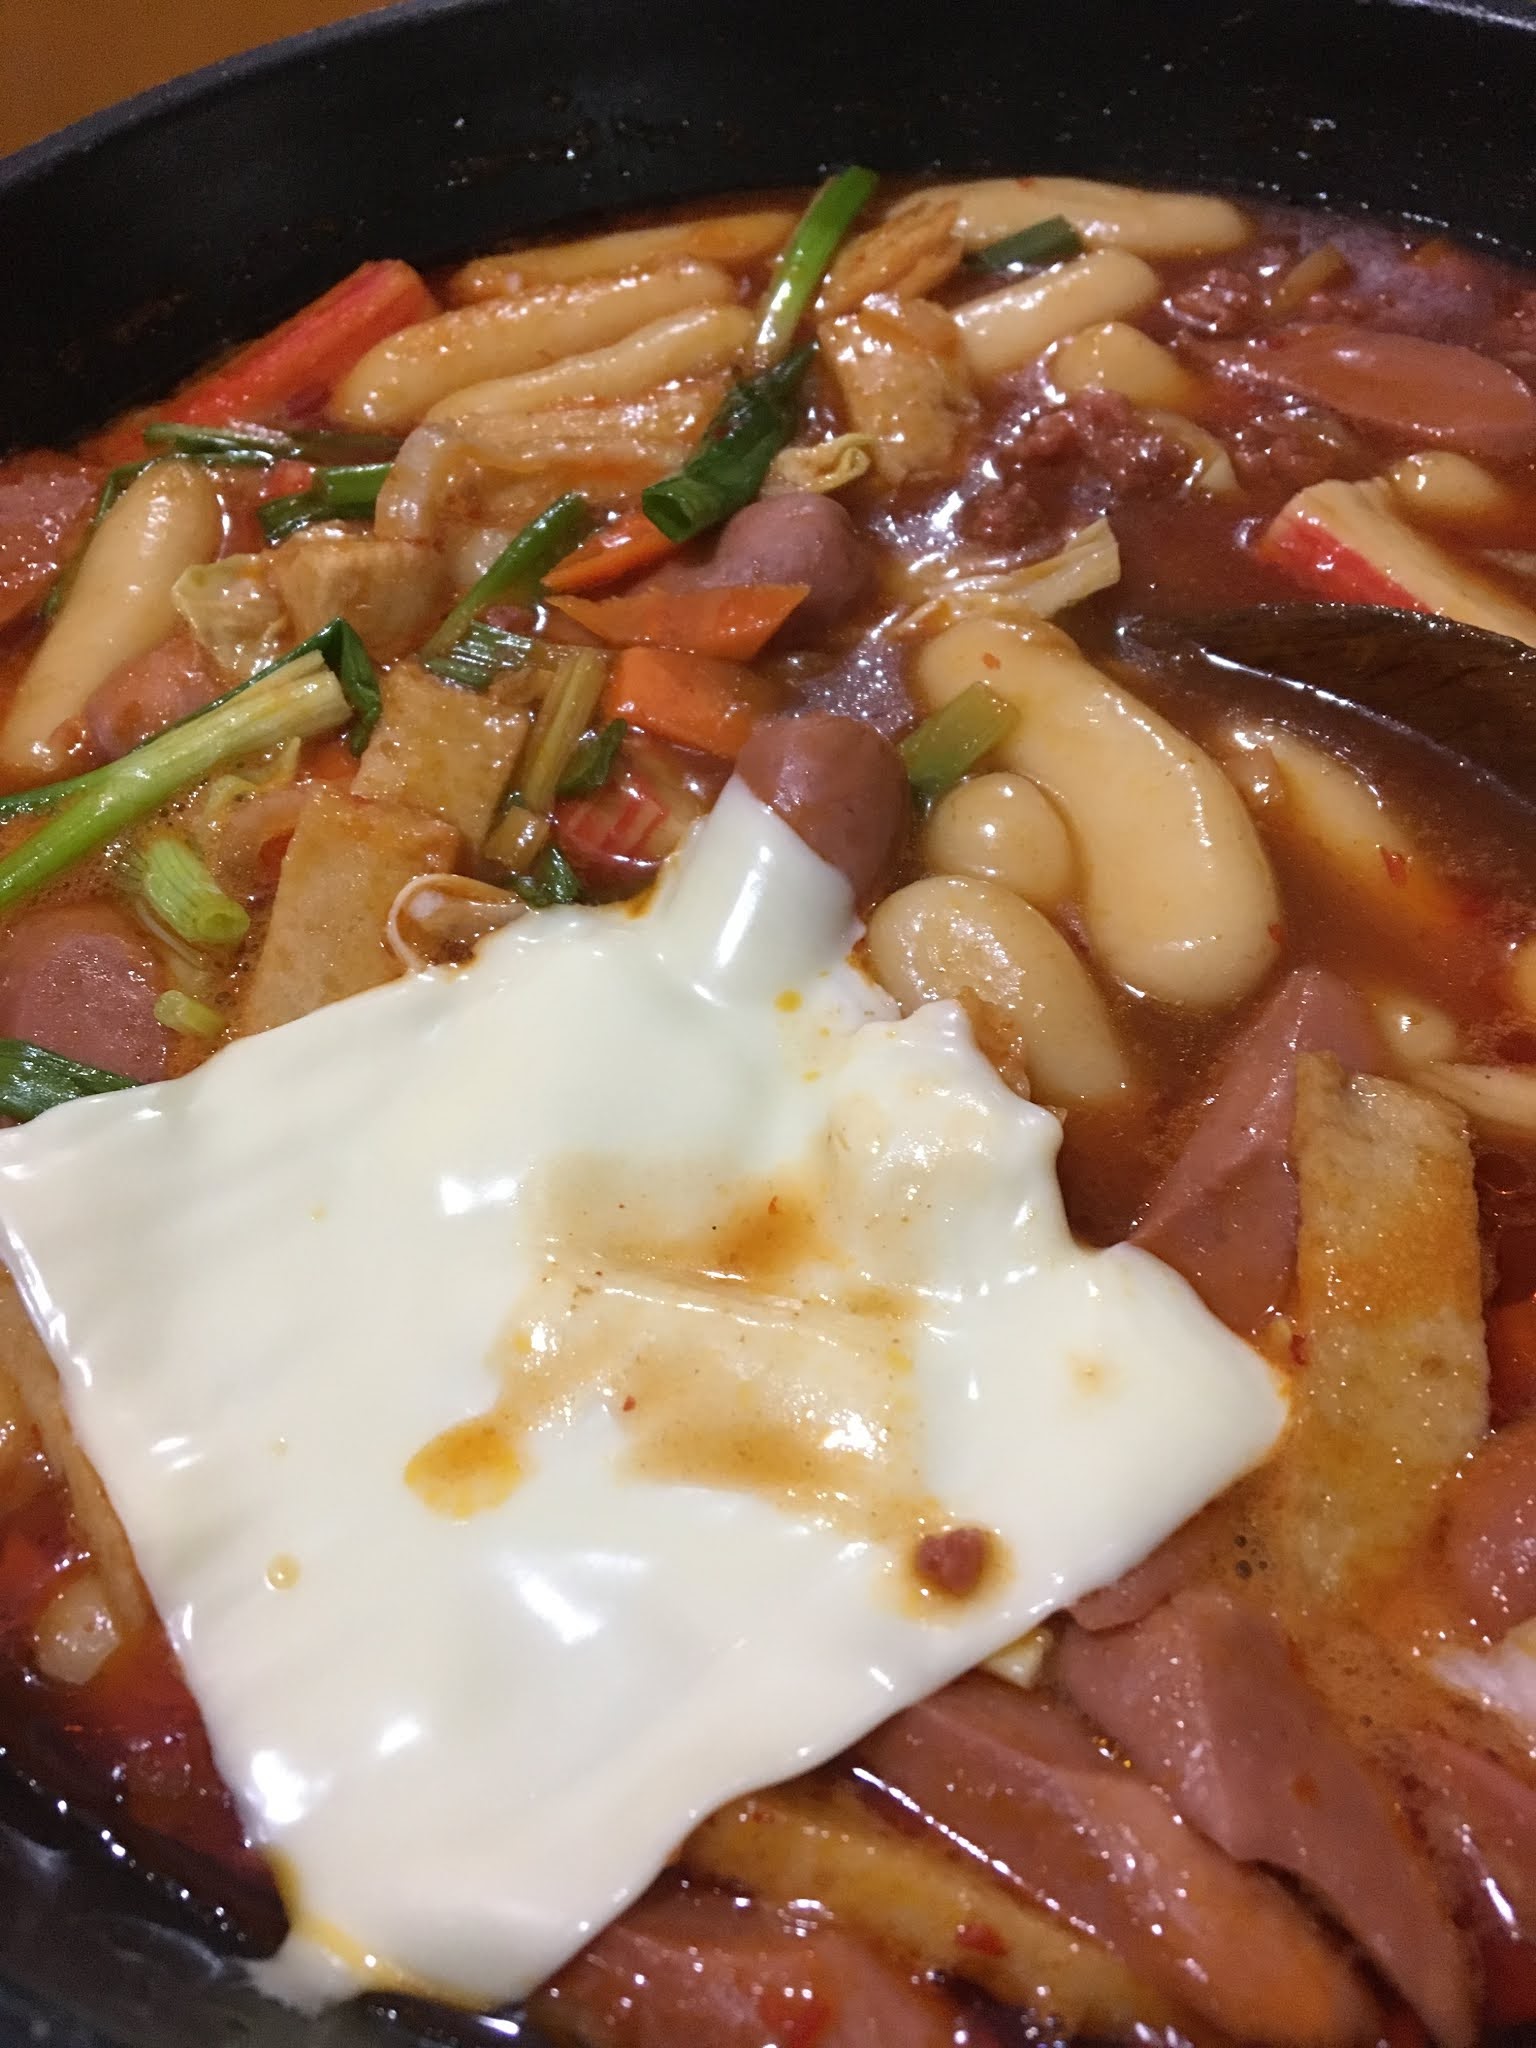 Resepi tteokbokki guna sos korea adabi